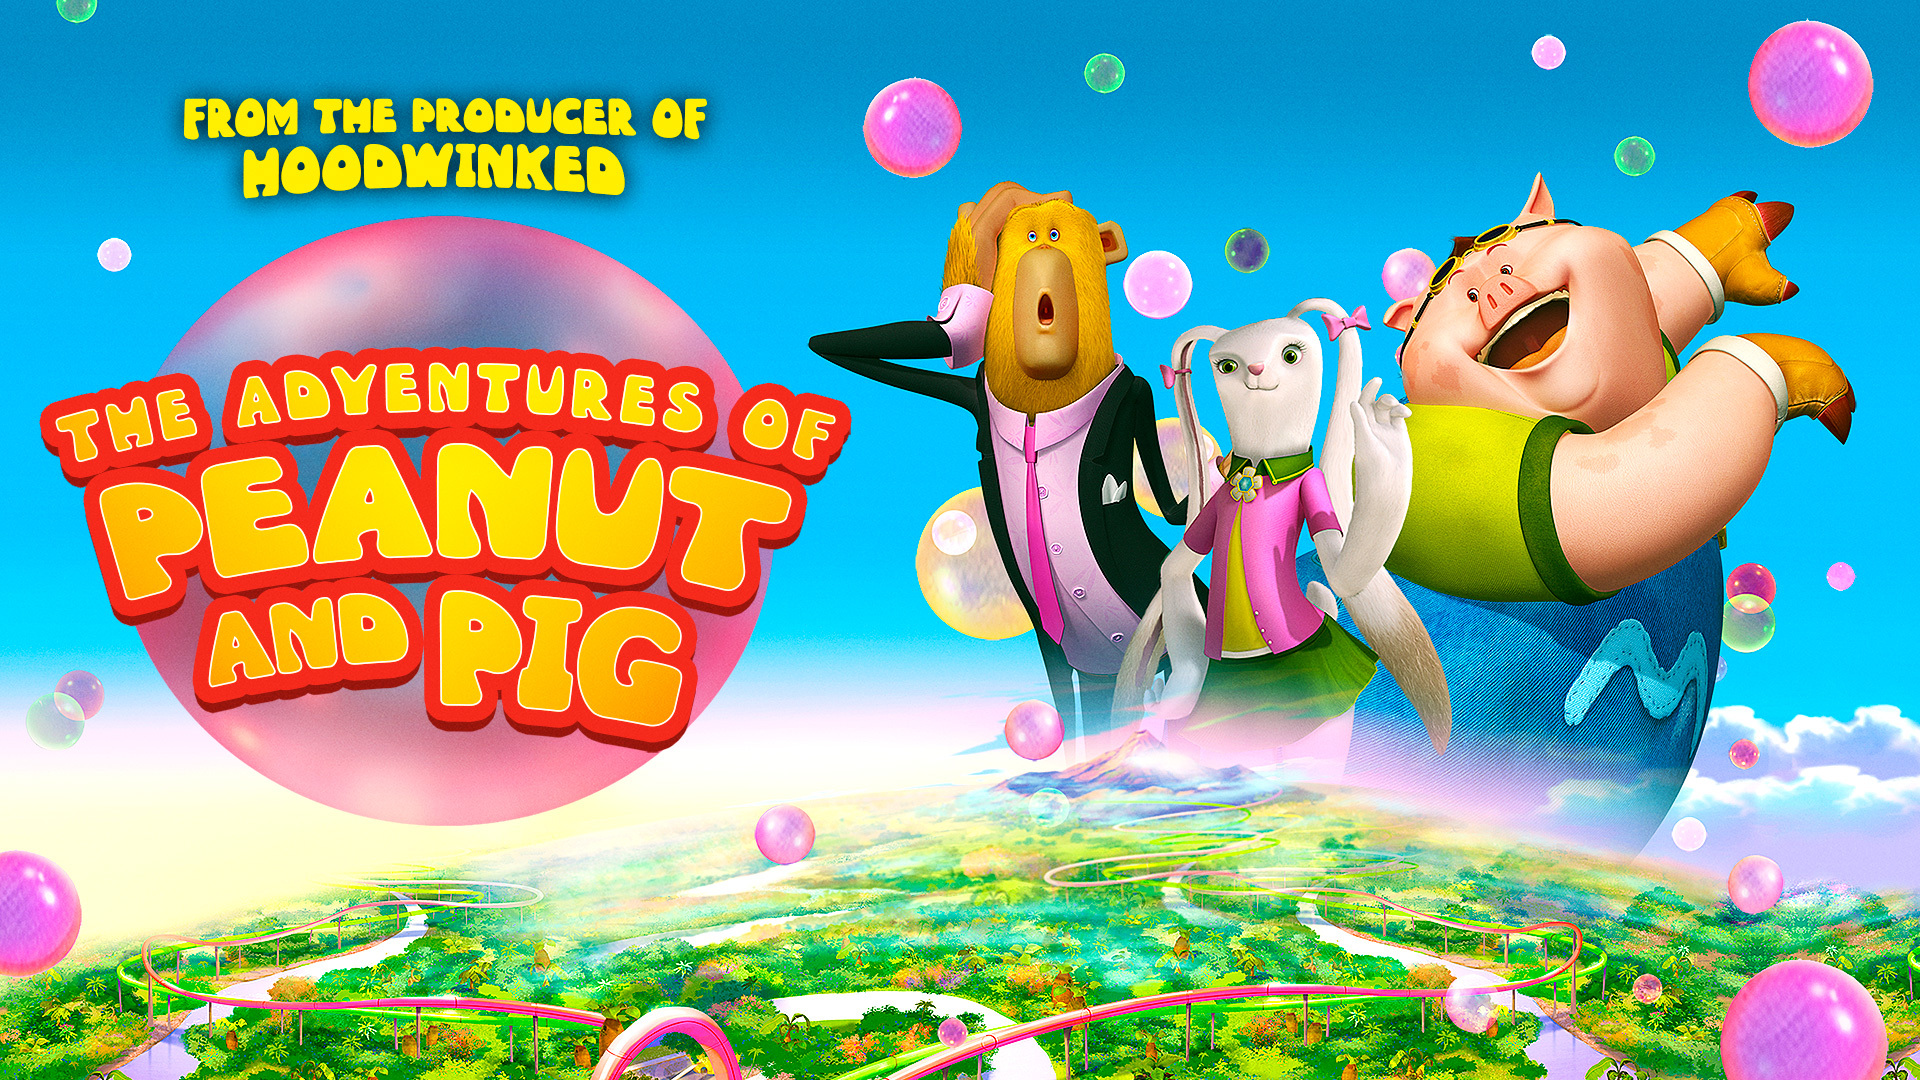 არაქისის და გოჭის თავგადასავალი / The Adventures of Peanut and Pig